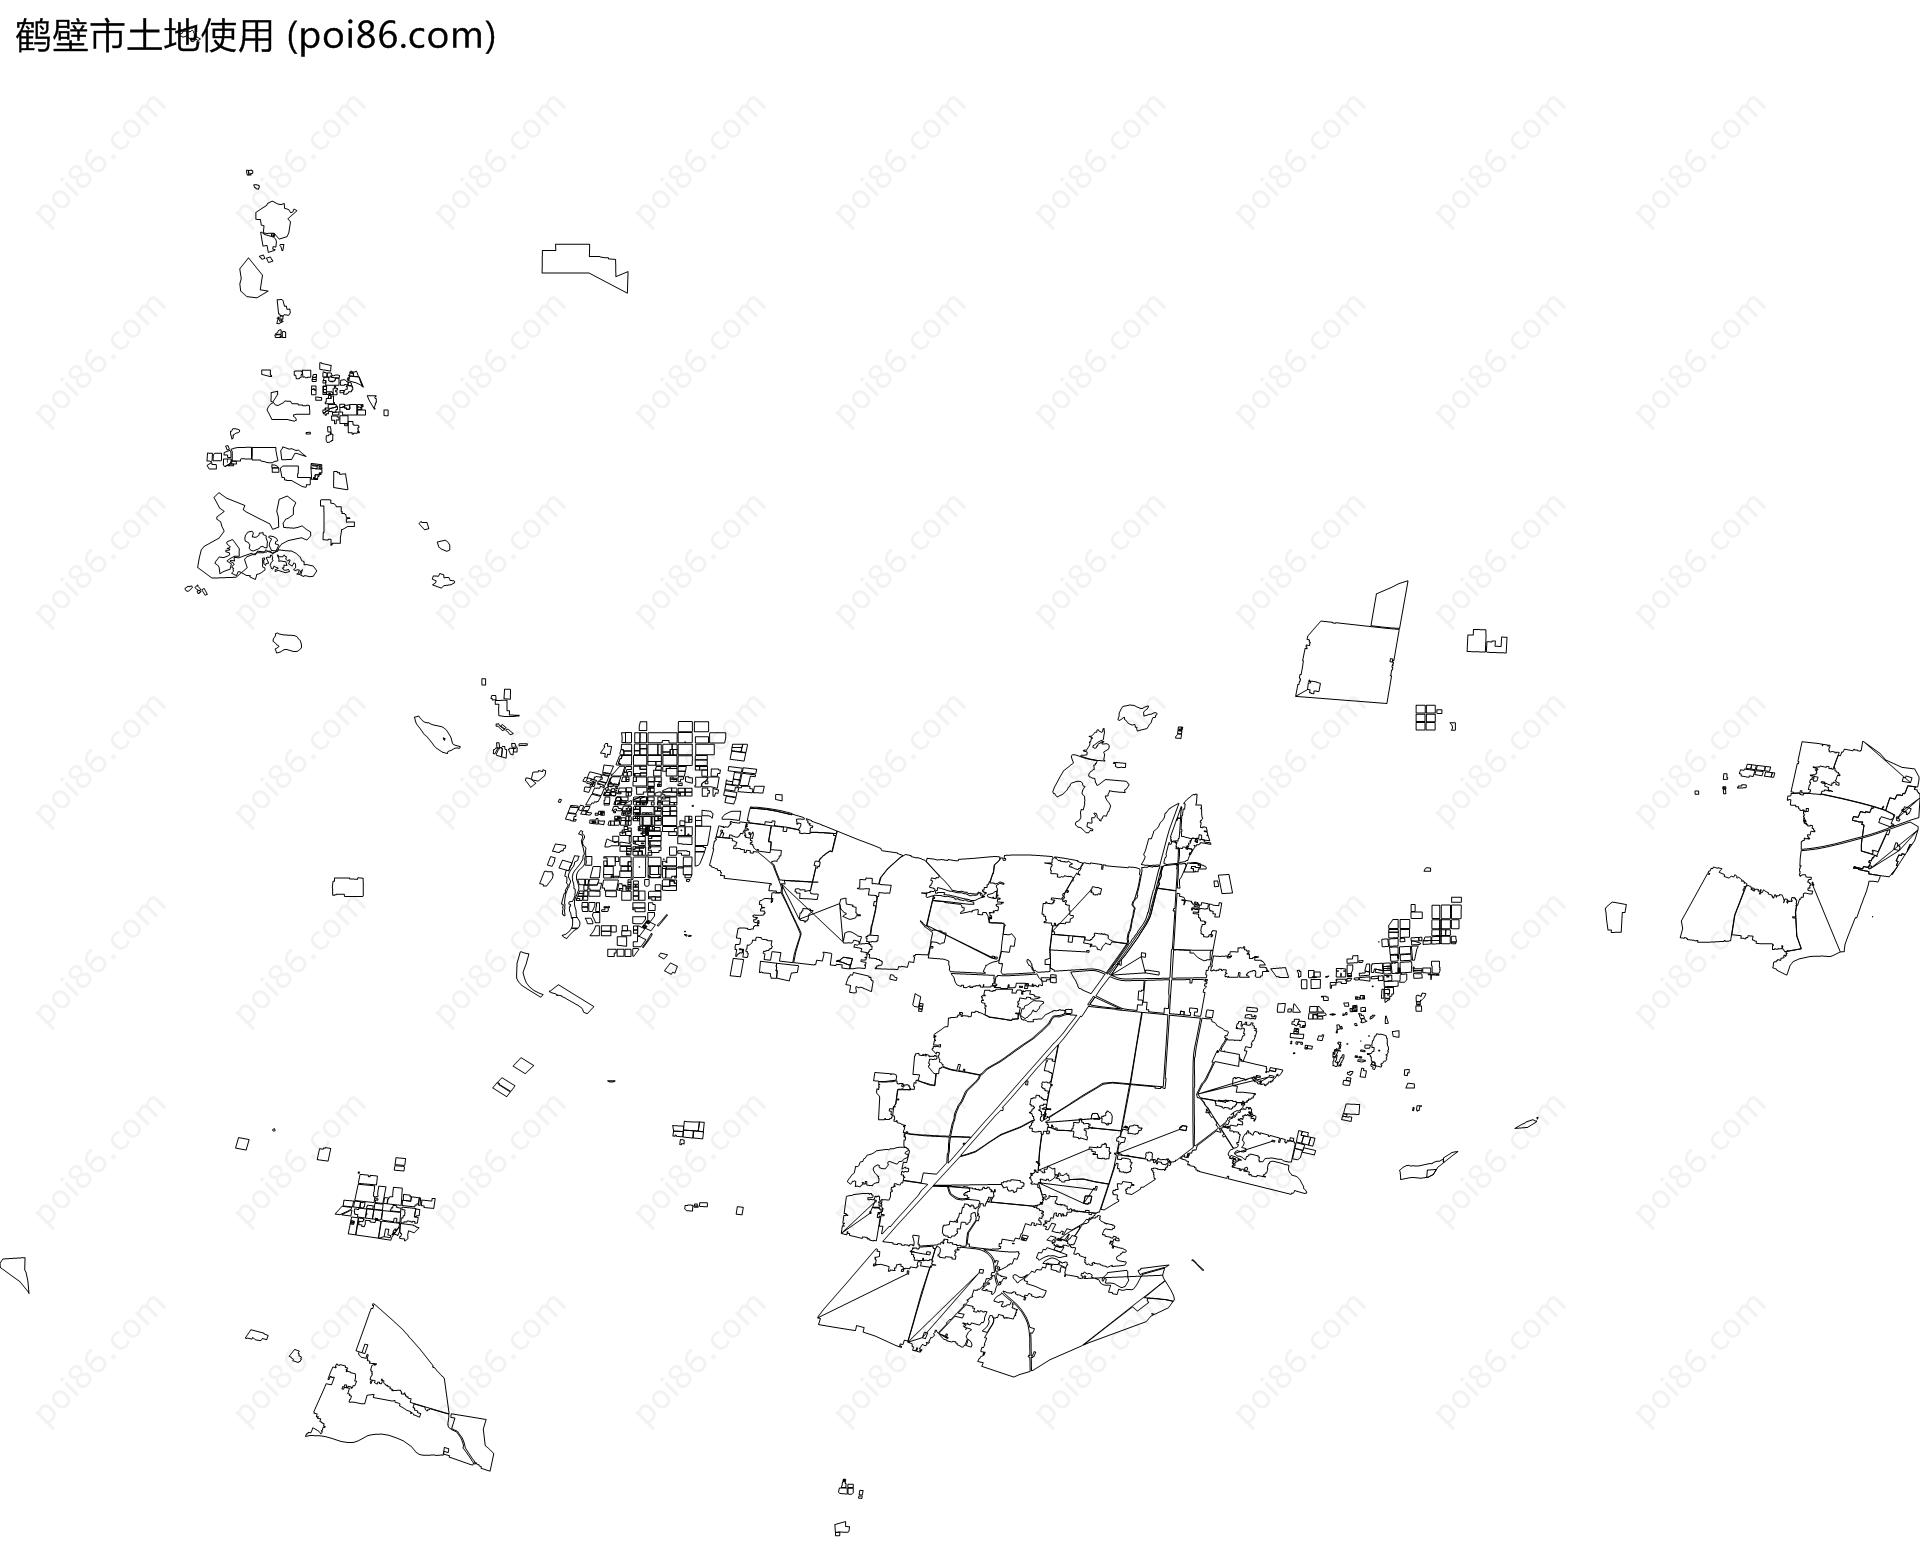 鹤壁市土地使用地图